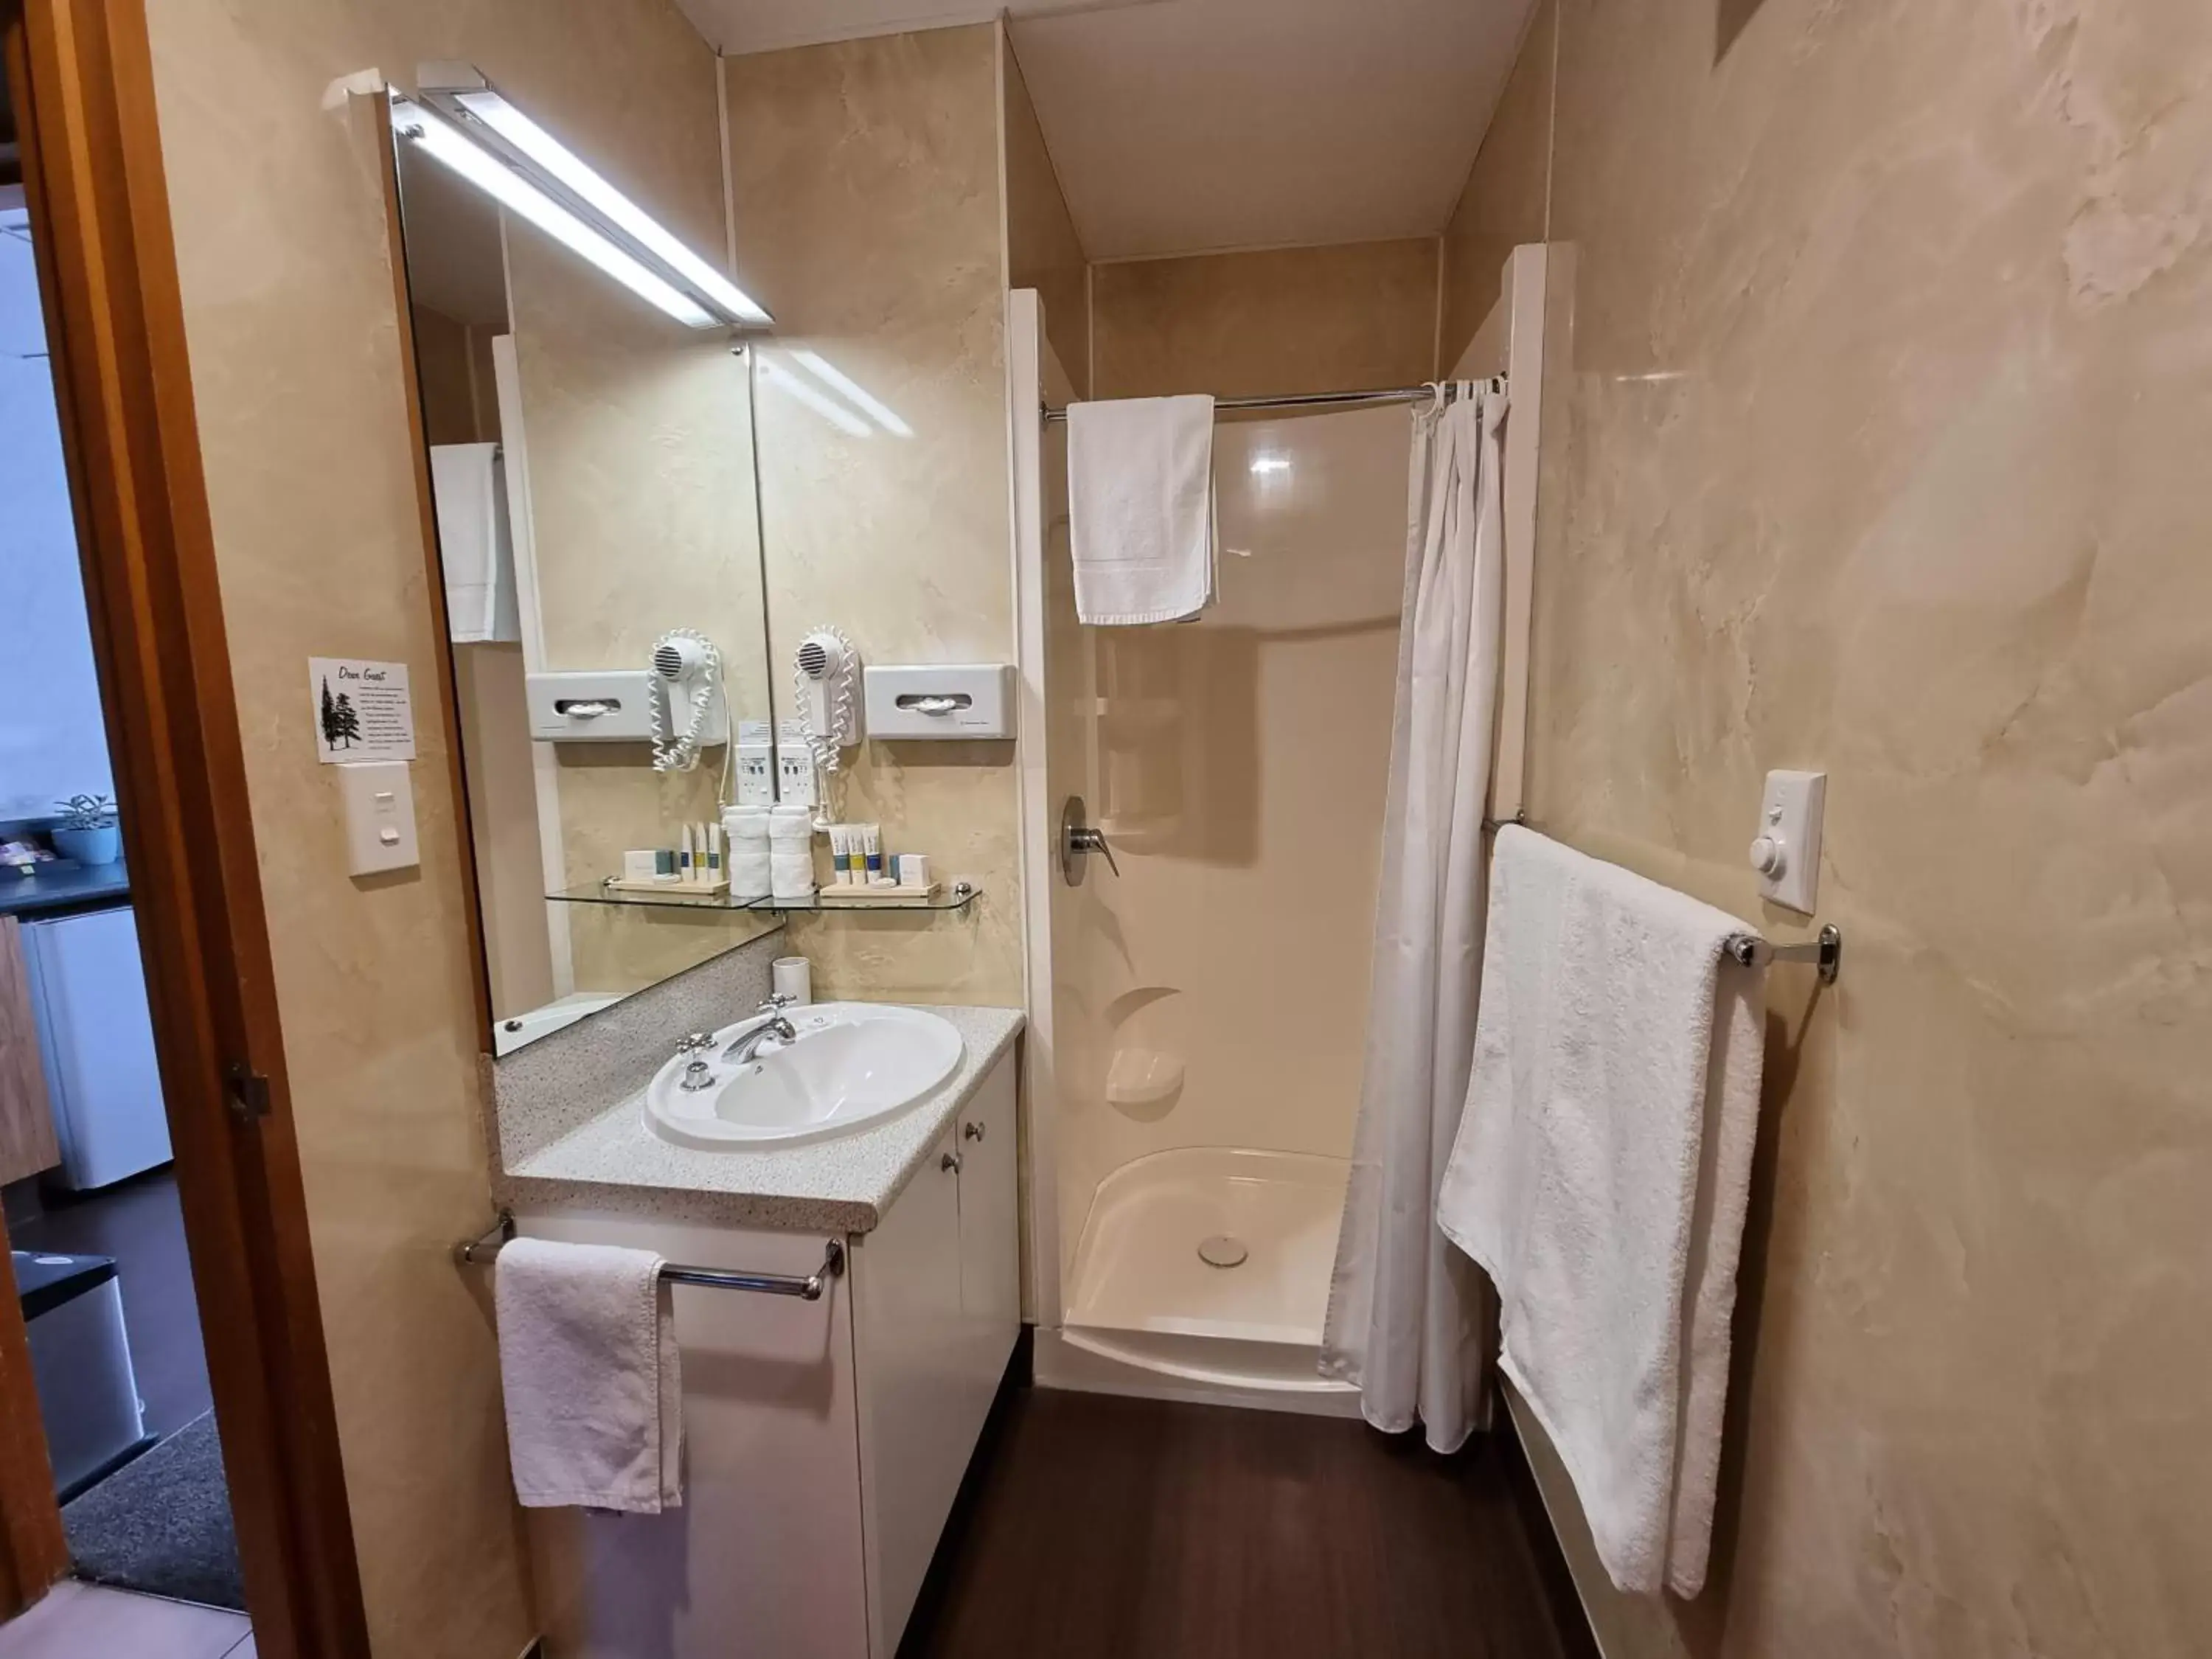 Bathroom in Amross Court